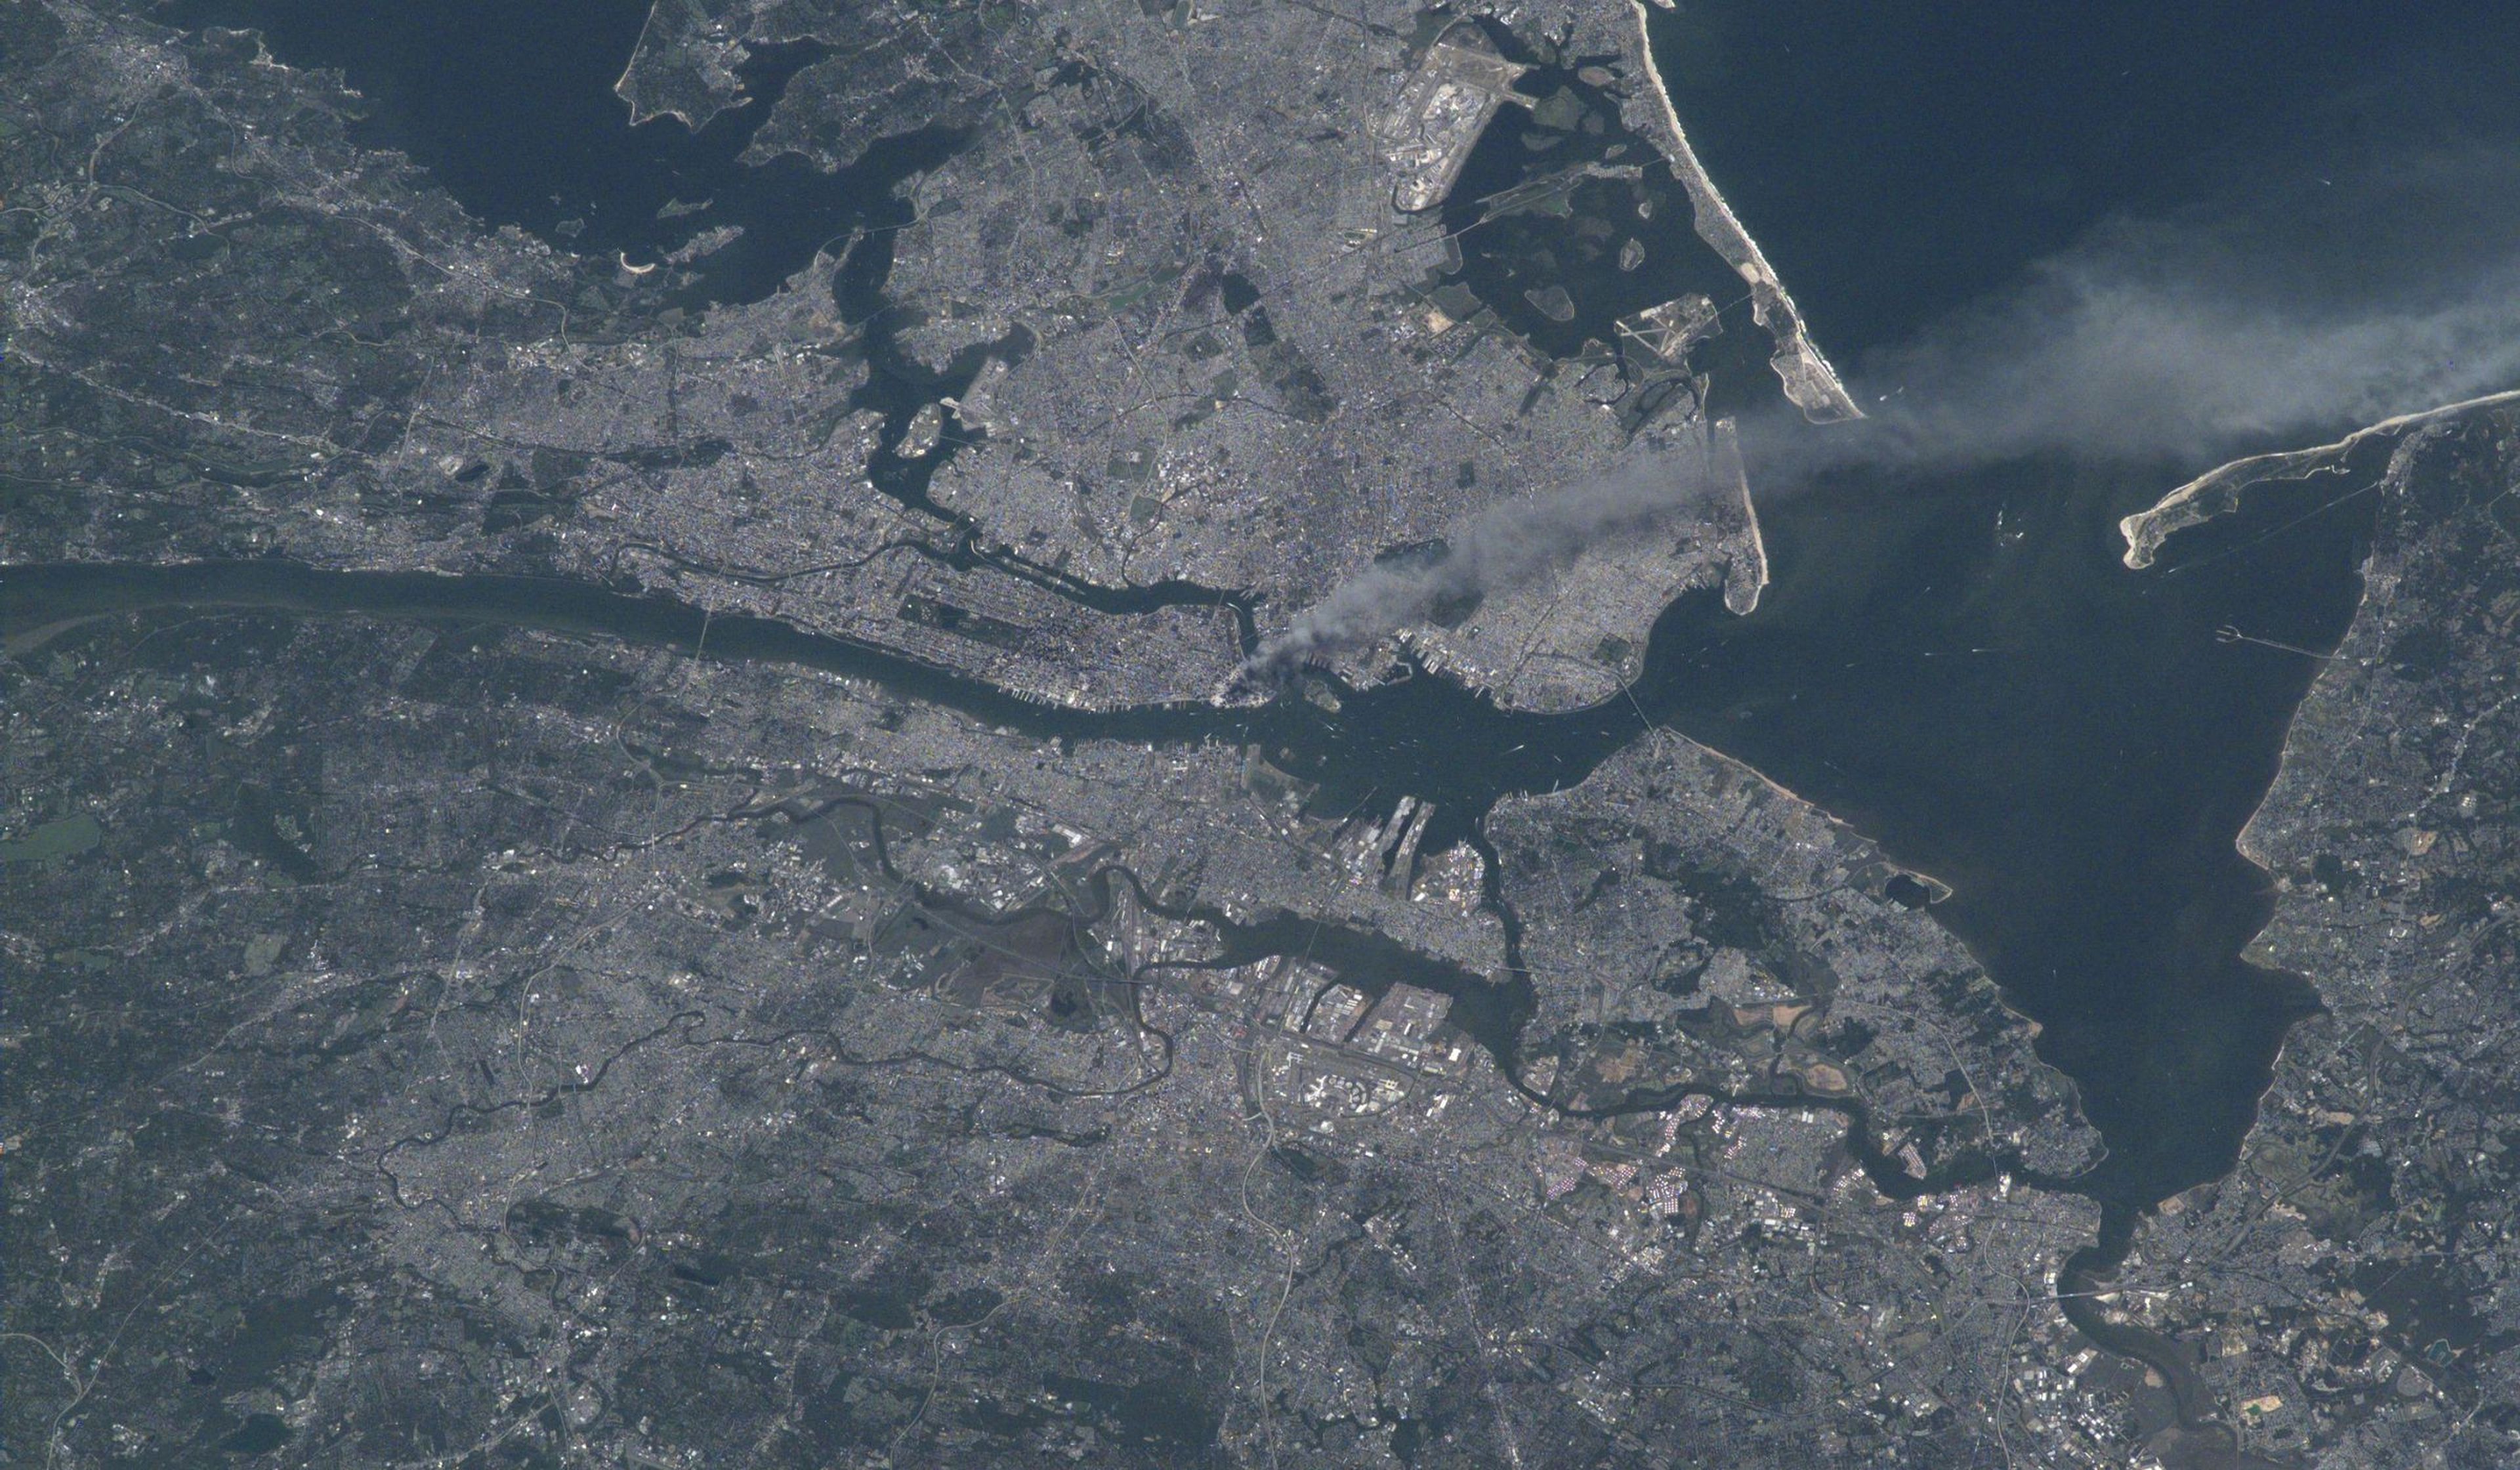 Vista del atentado del 11-S desde el espacio. Fuente: NASA